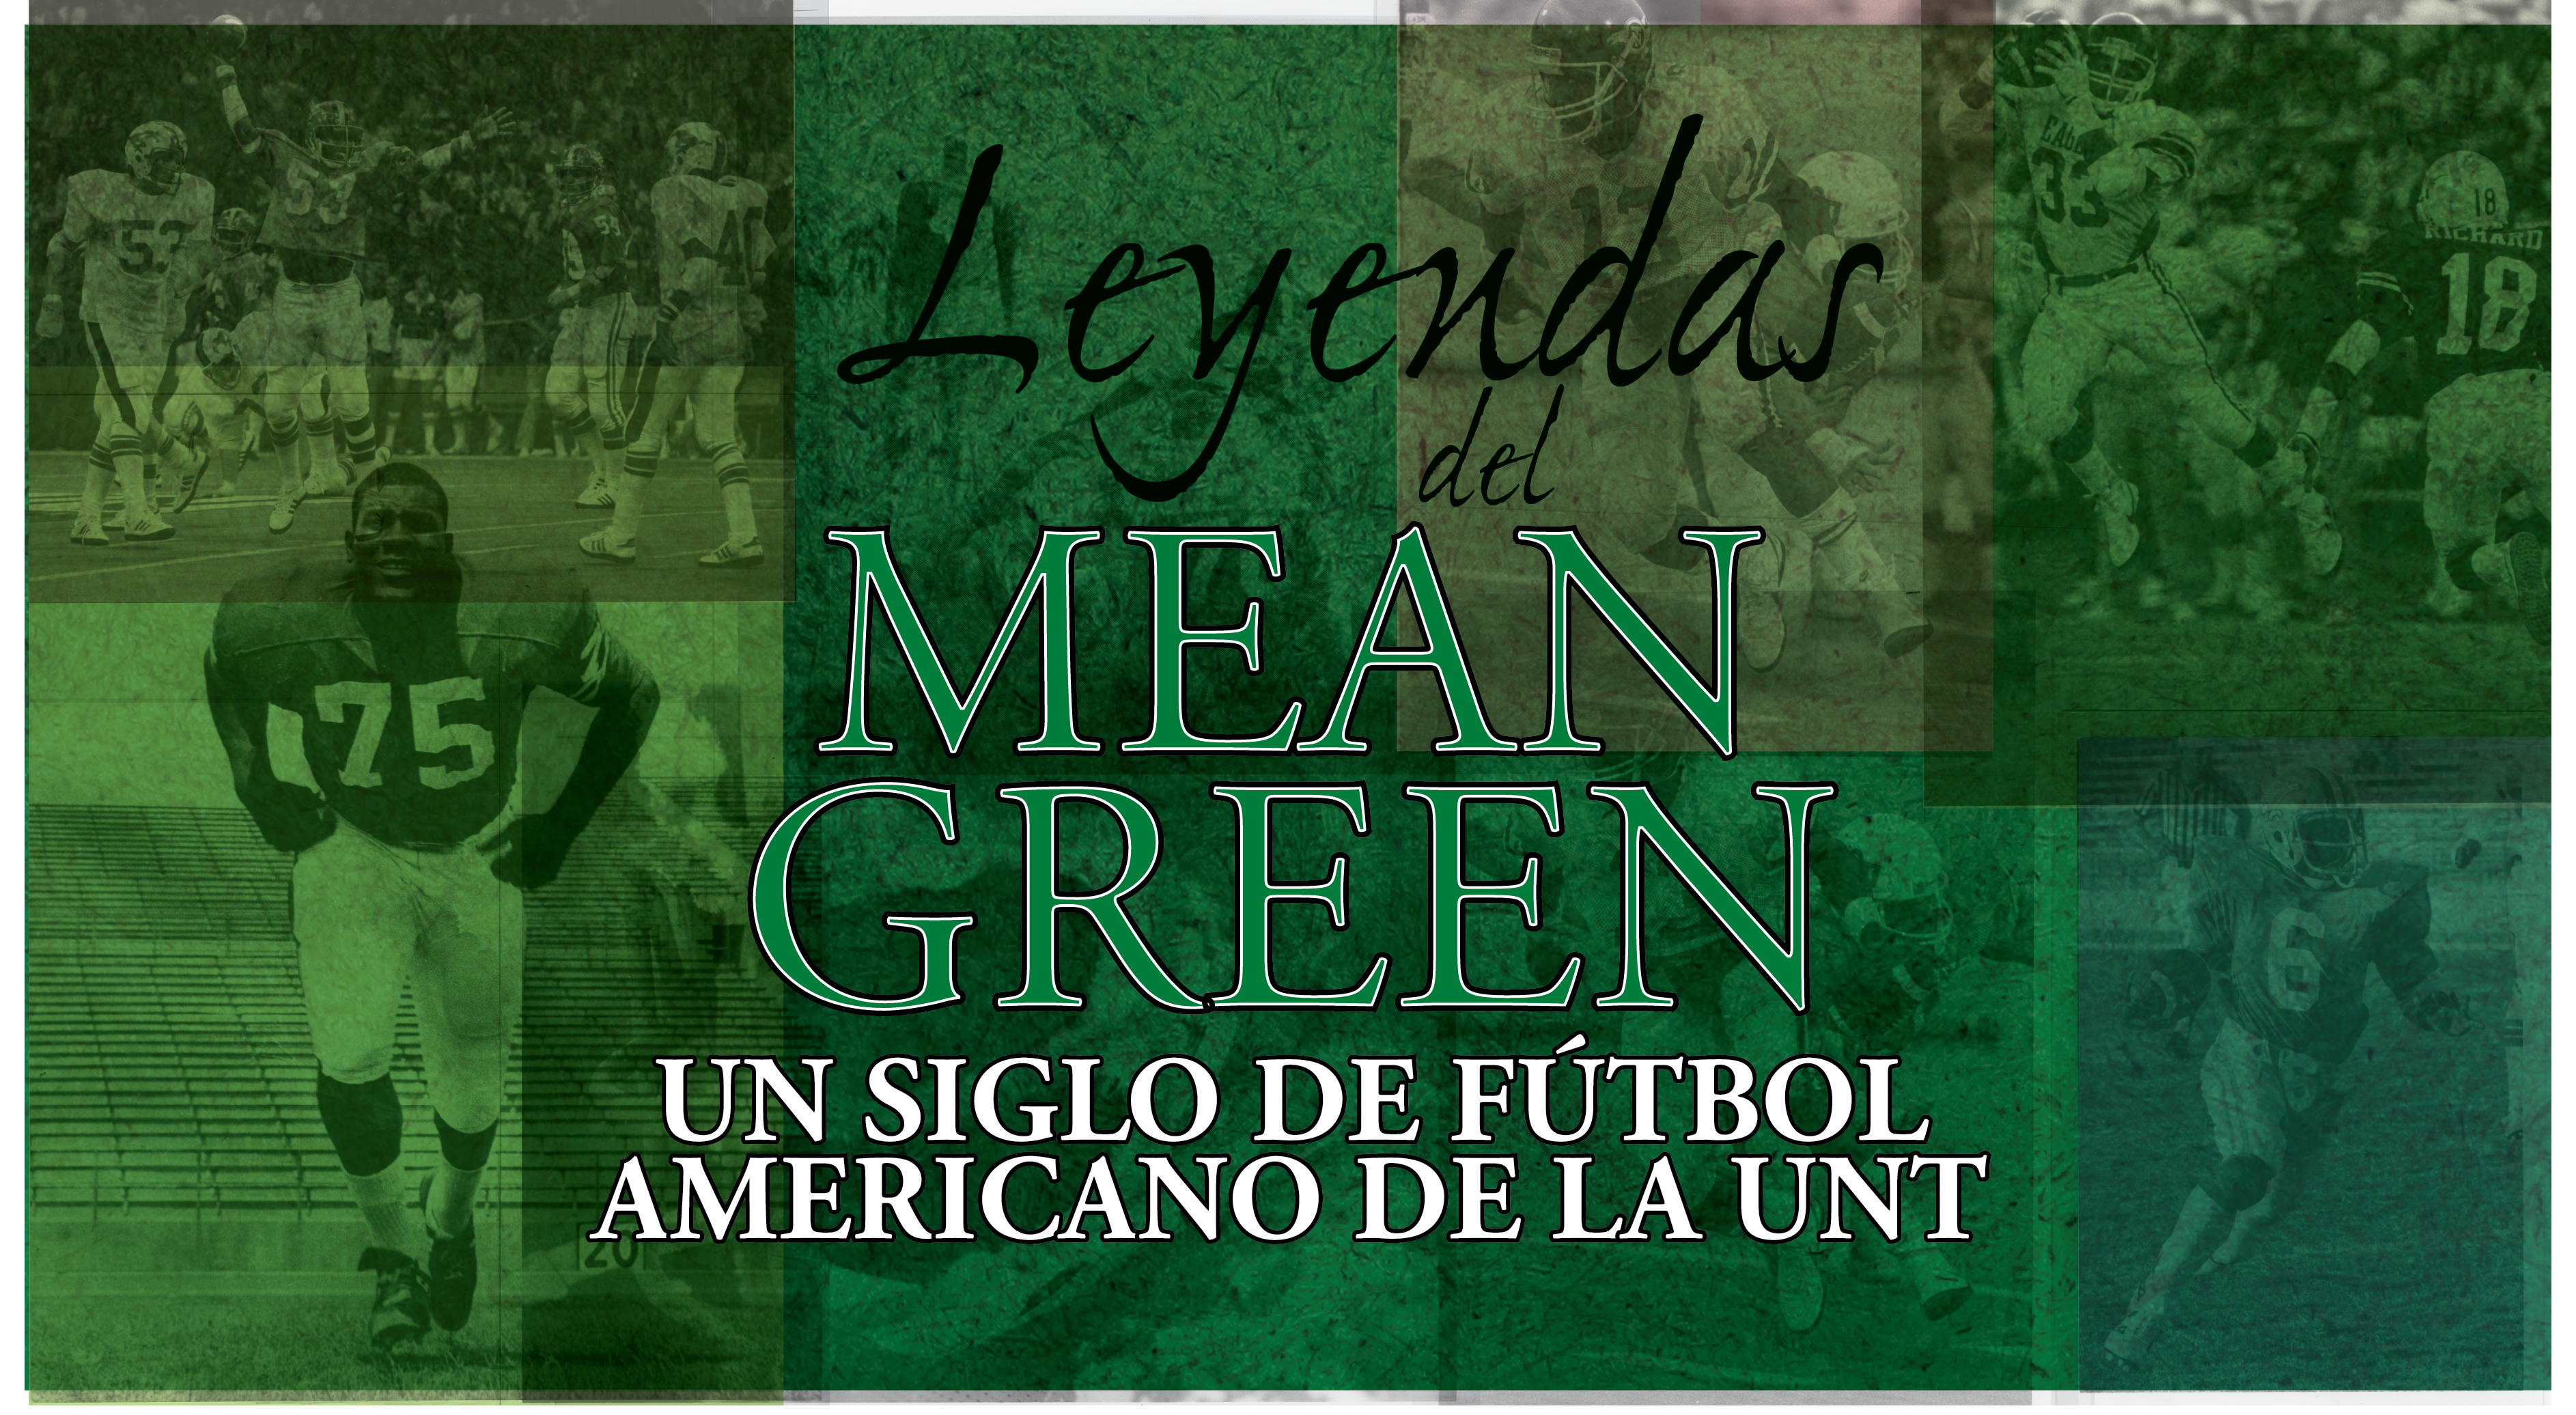 Fondo verde con fotografías de un partido de fútbol americano en el fondo. El título de la exposición, Leyendas del Mean Green, aparece en letras grandes en el centro de la pancarta.